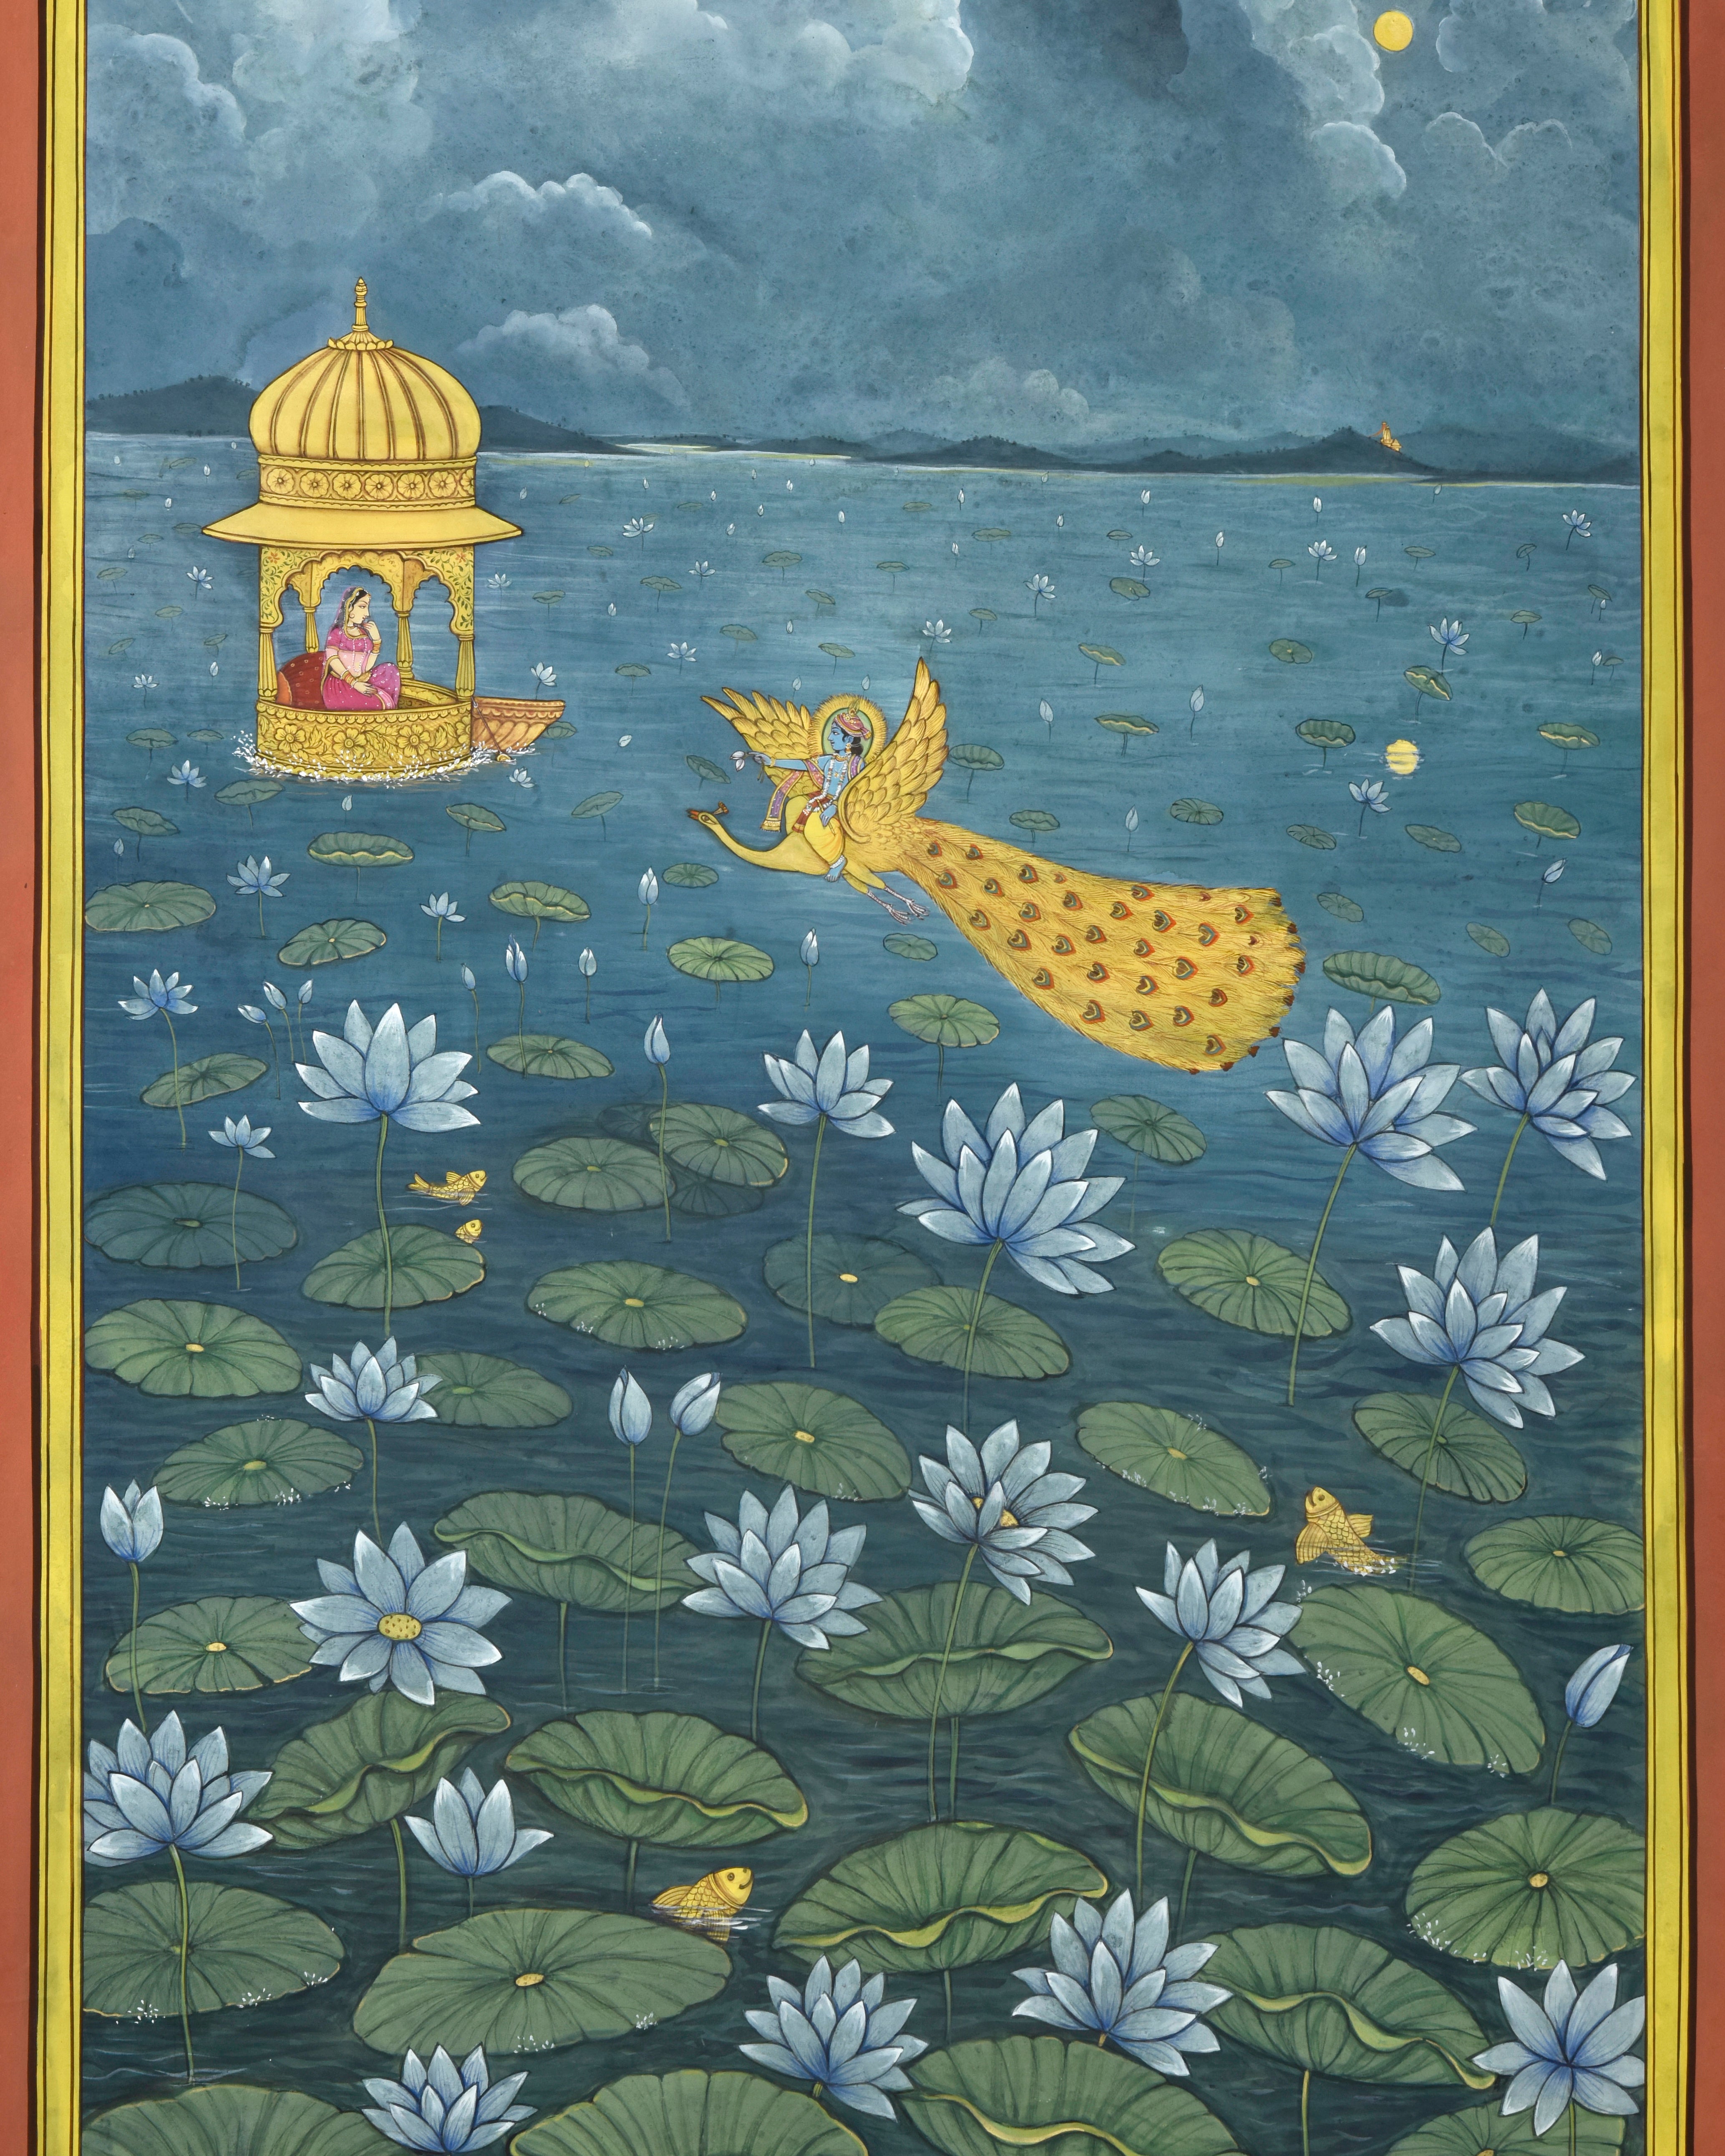 Pichwai Painting | Radha Krishna Blue Lotus | Indian Art